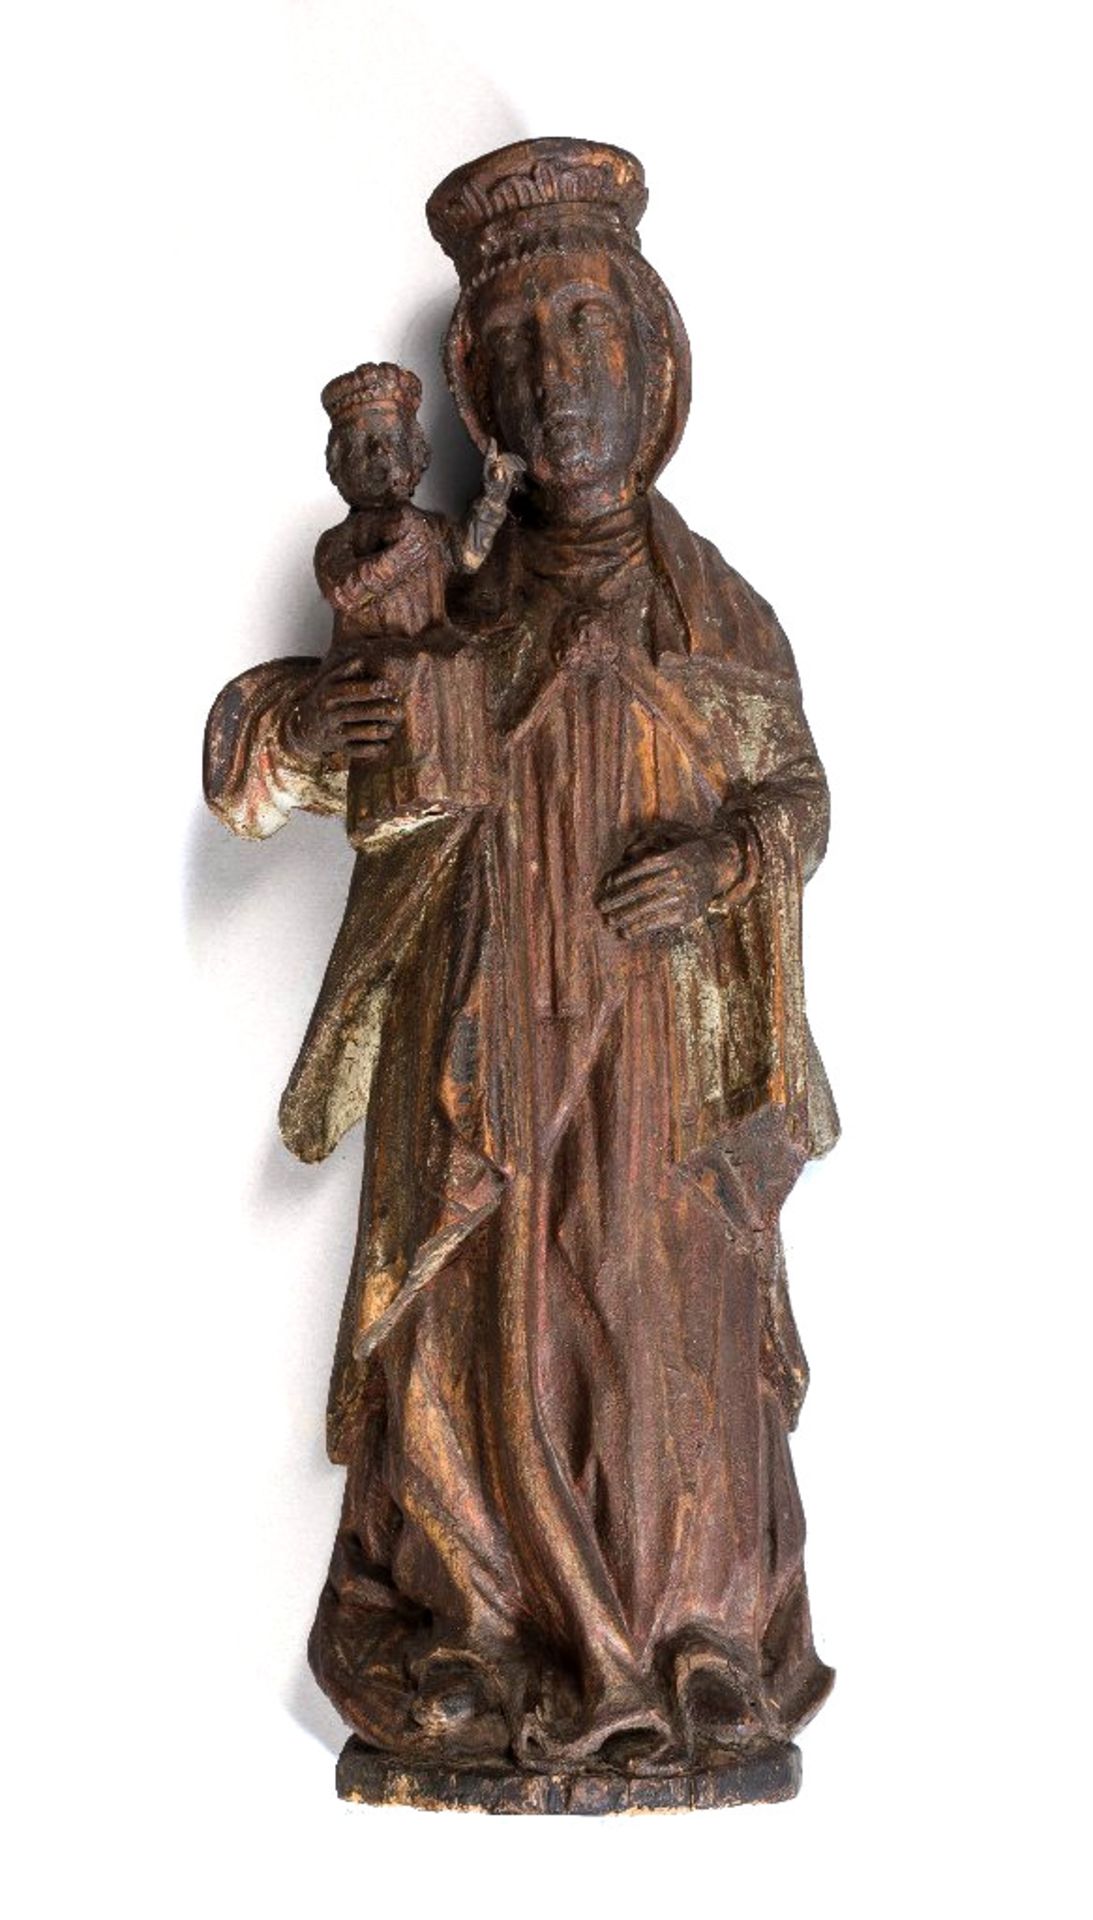 Stehende Madonna mit Kind. Holz mit Resten von Fassung. Kolonialspanien, 16. Jh. H 48 cm. Dazu spät